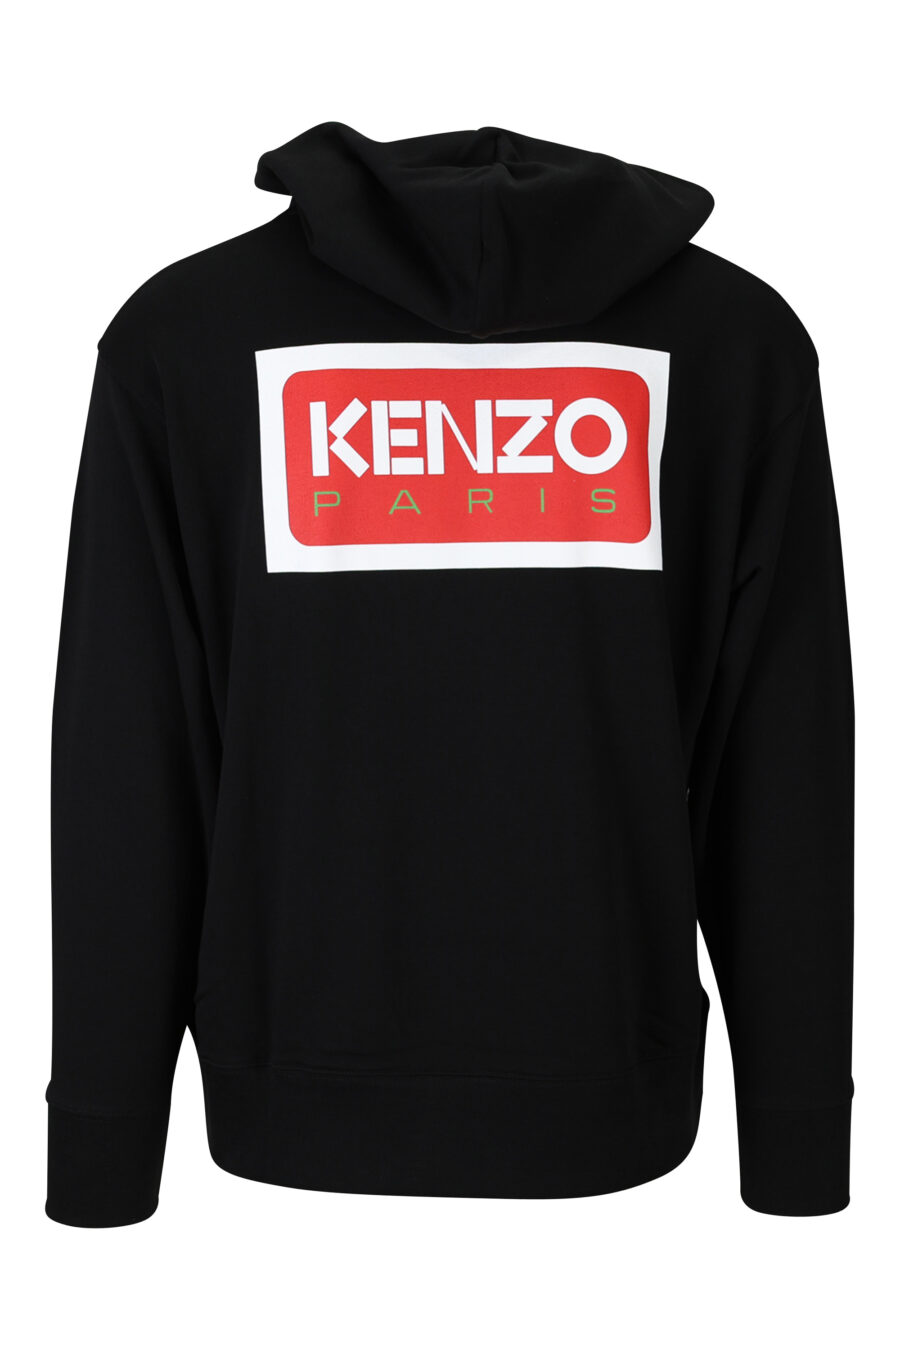 Sweatshirt preta de tamanho grande com capuz e logótipo "kenzo paris" - 3612230515673 1